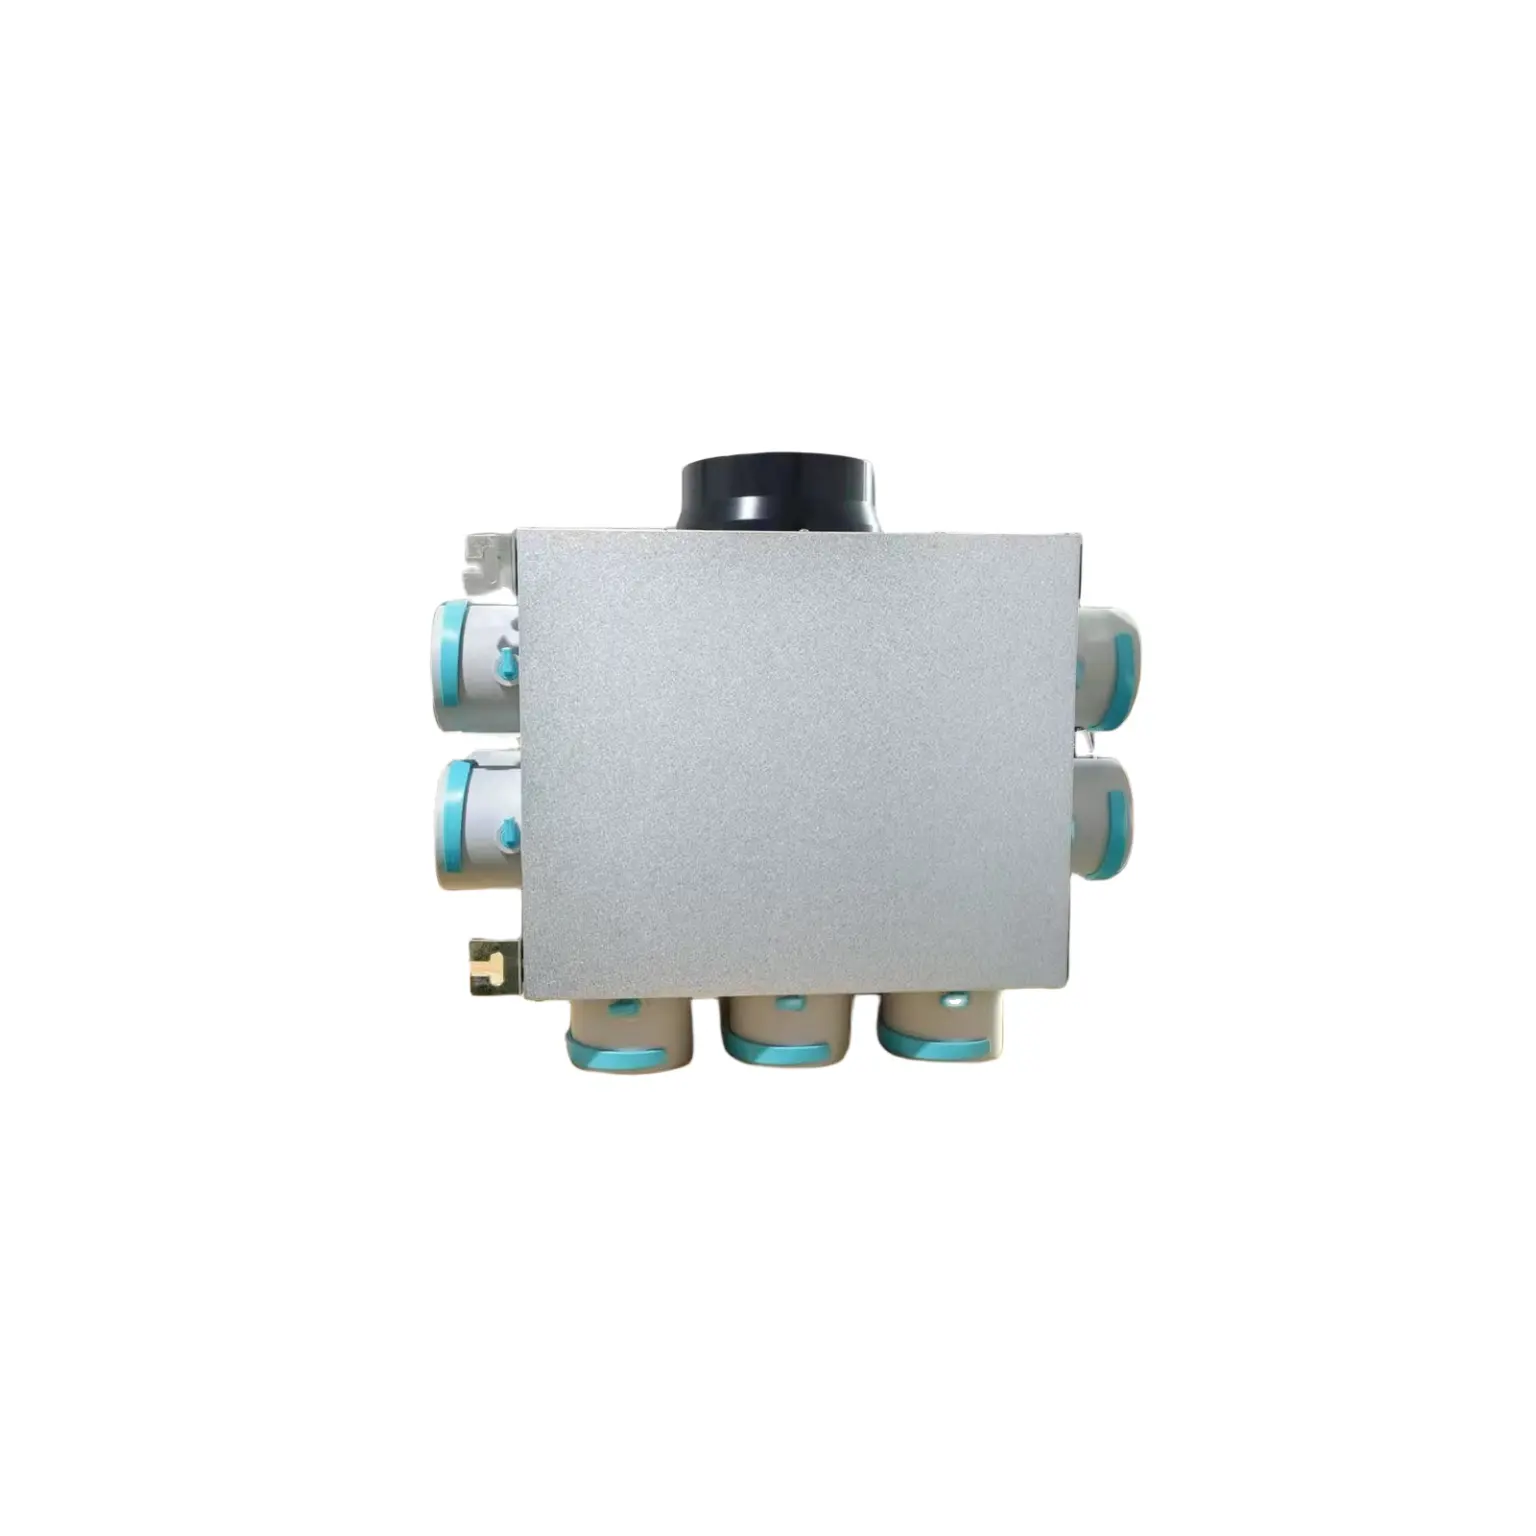 シルバー1-12ポート素材アルミ亜鉛プレート防音綿換気空気分配ボックス